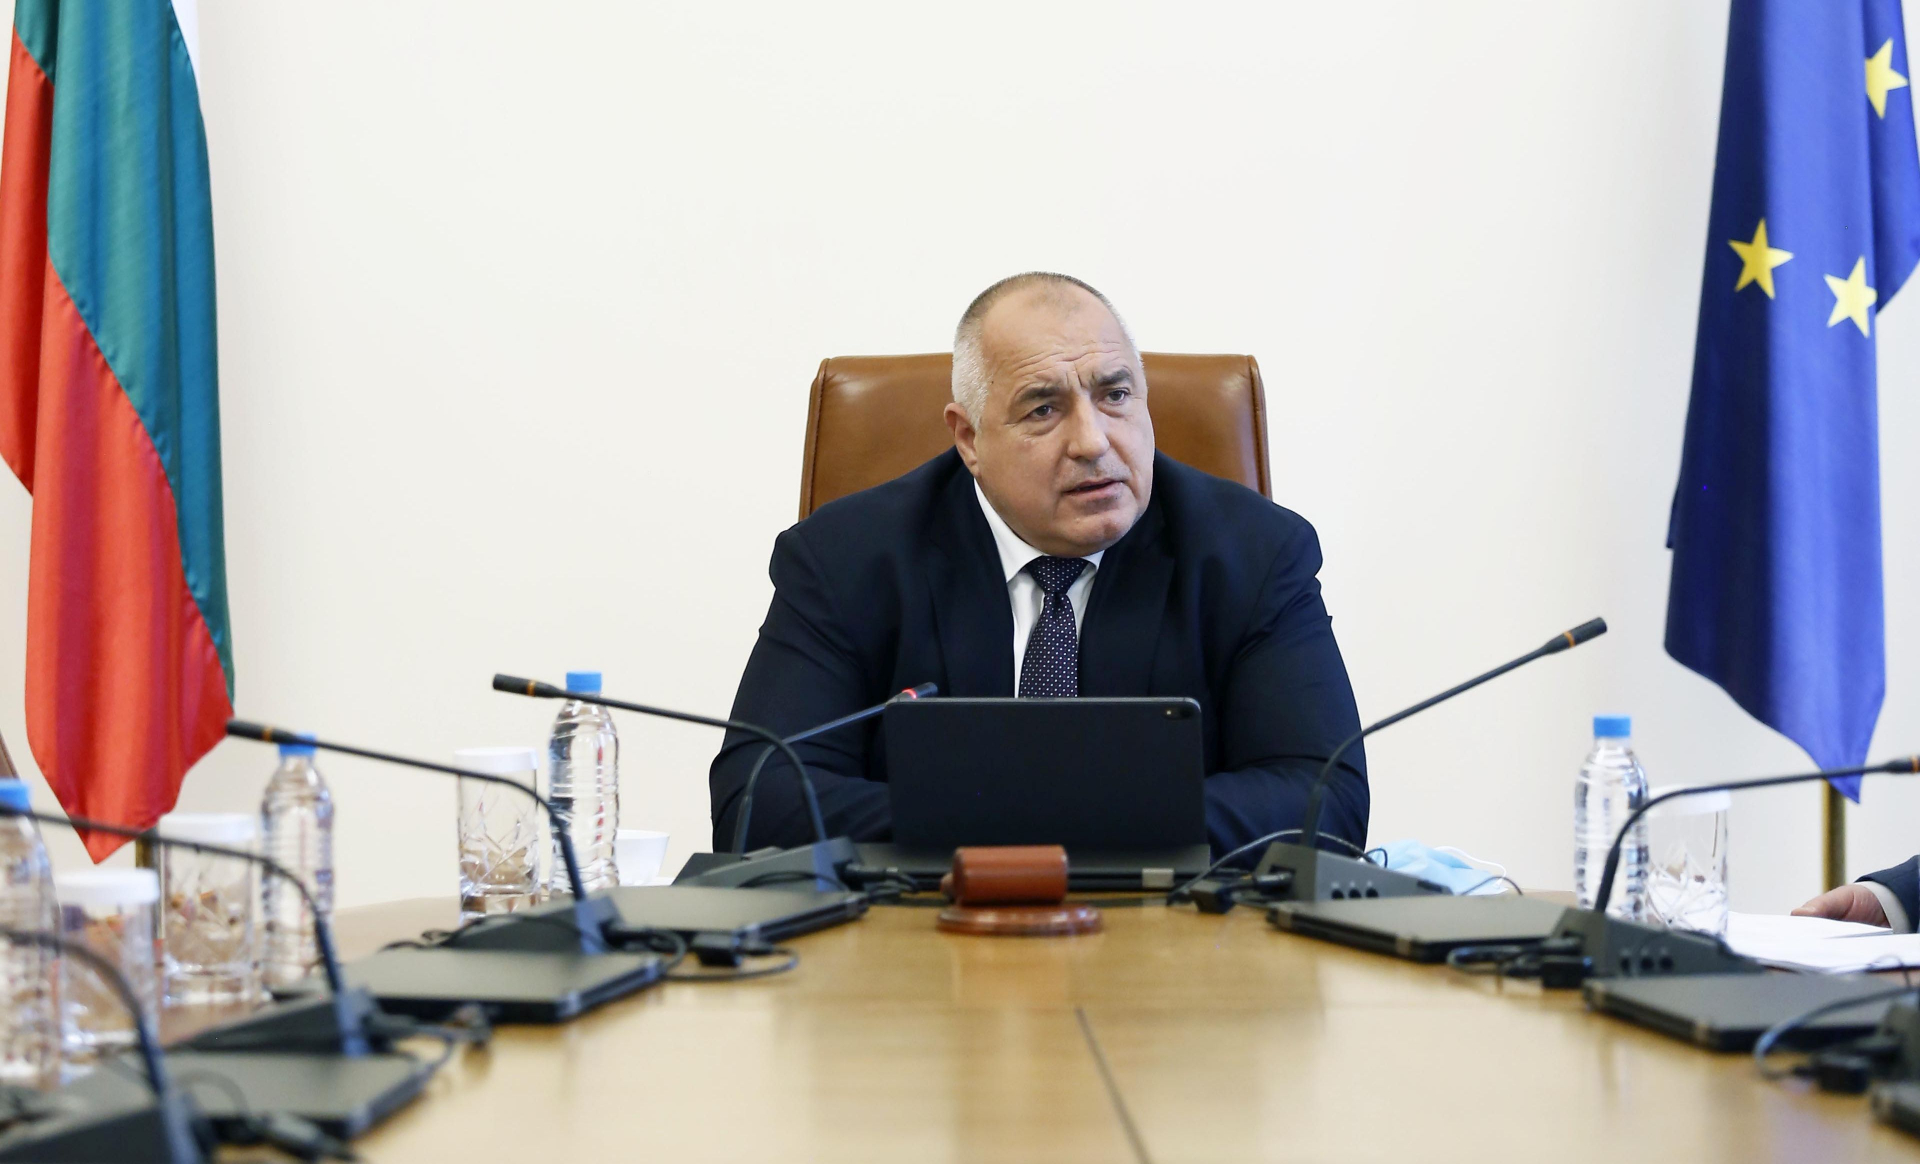 Борисов извънредно привика министрите заради важно К-19 решение ВИДЕО